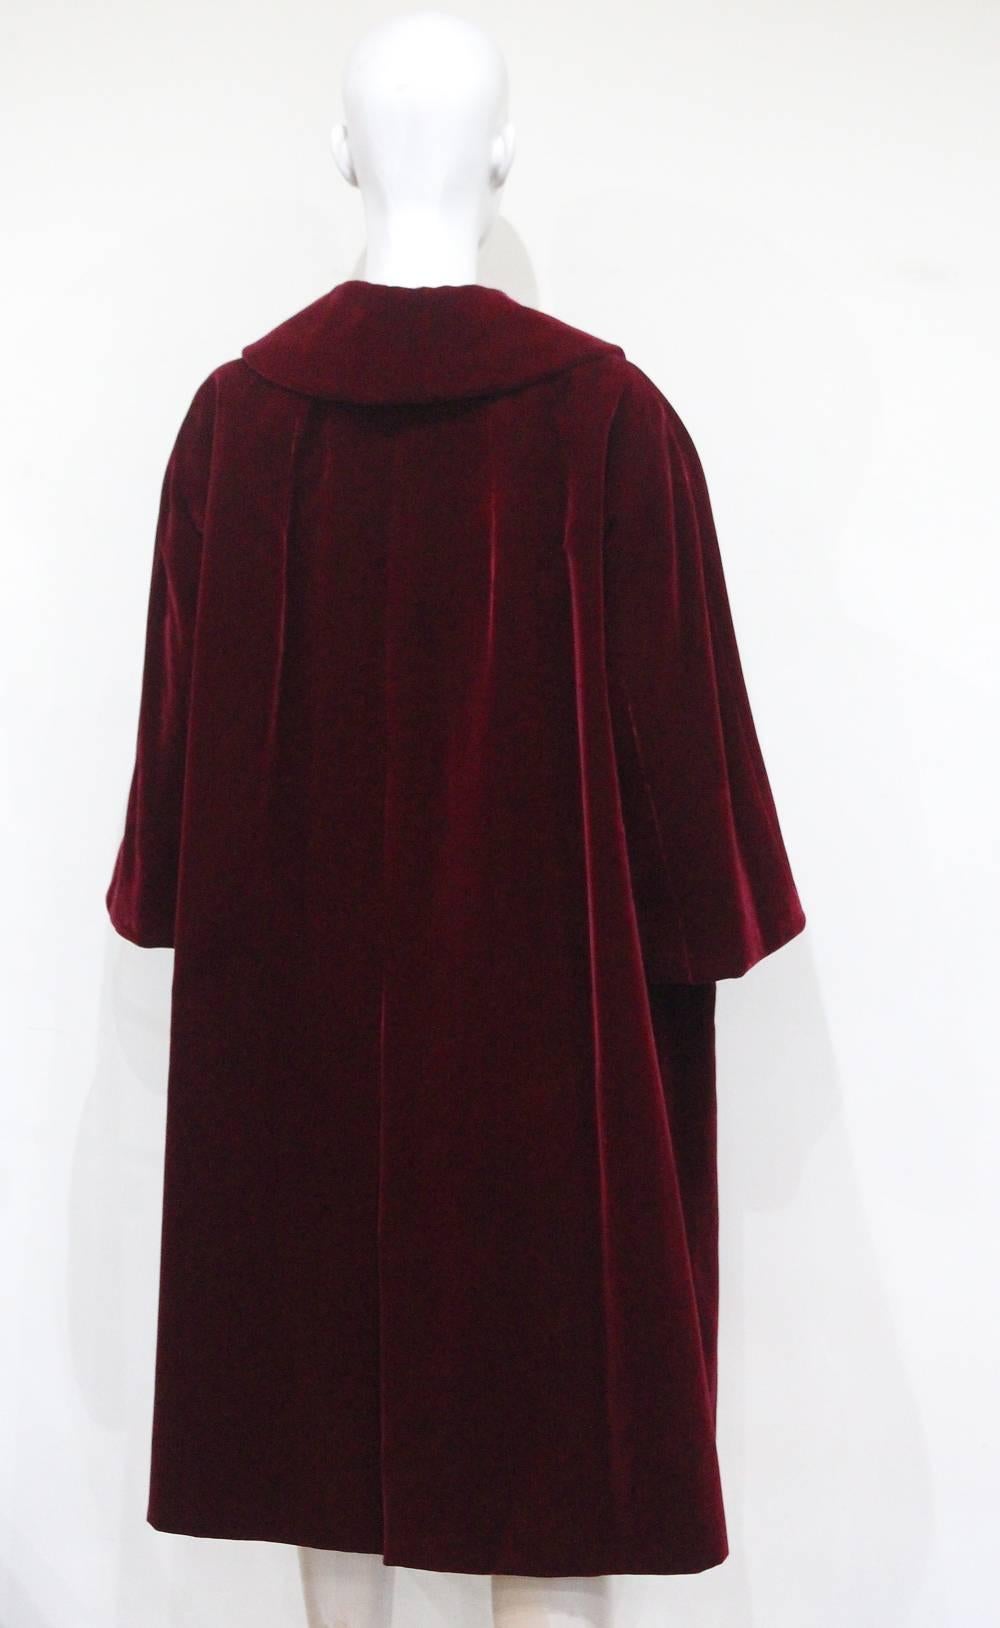 Women's Christian Dior Haute Couture silk velvet opera coat, Autumn/Winter 1956